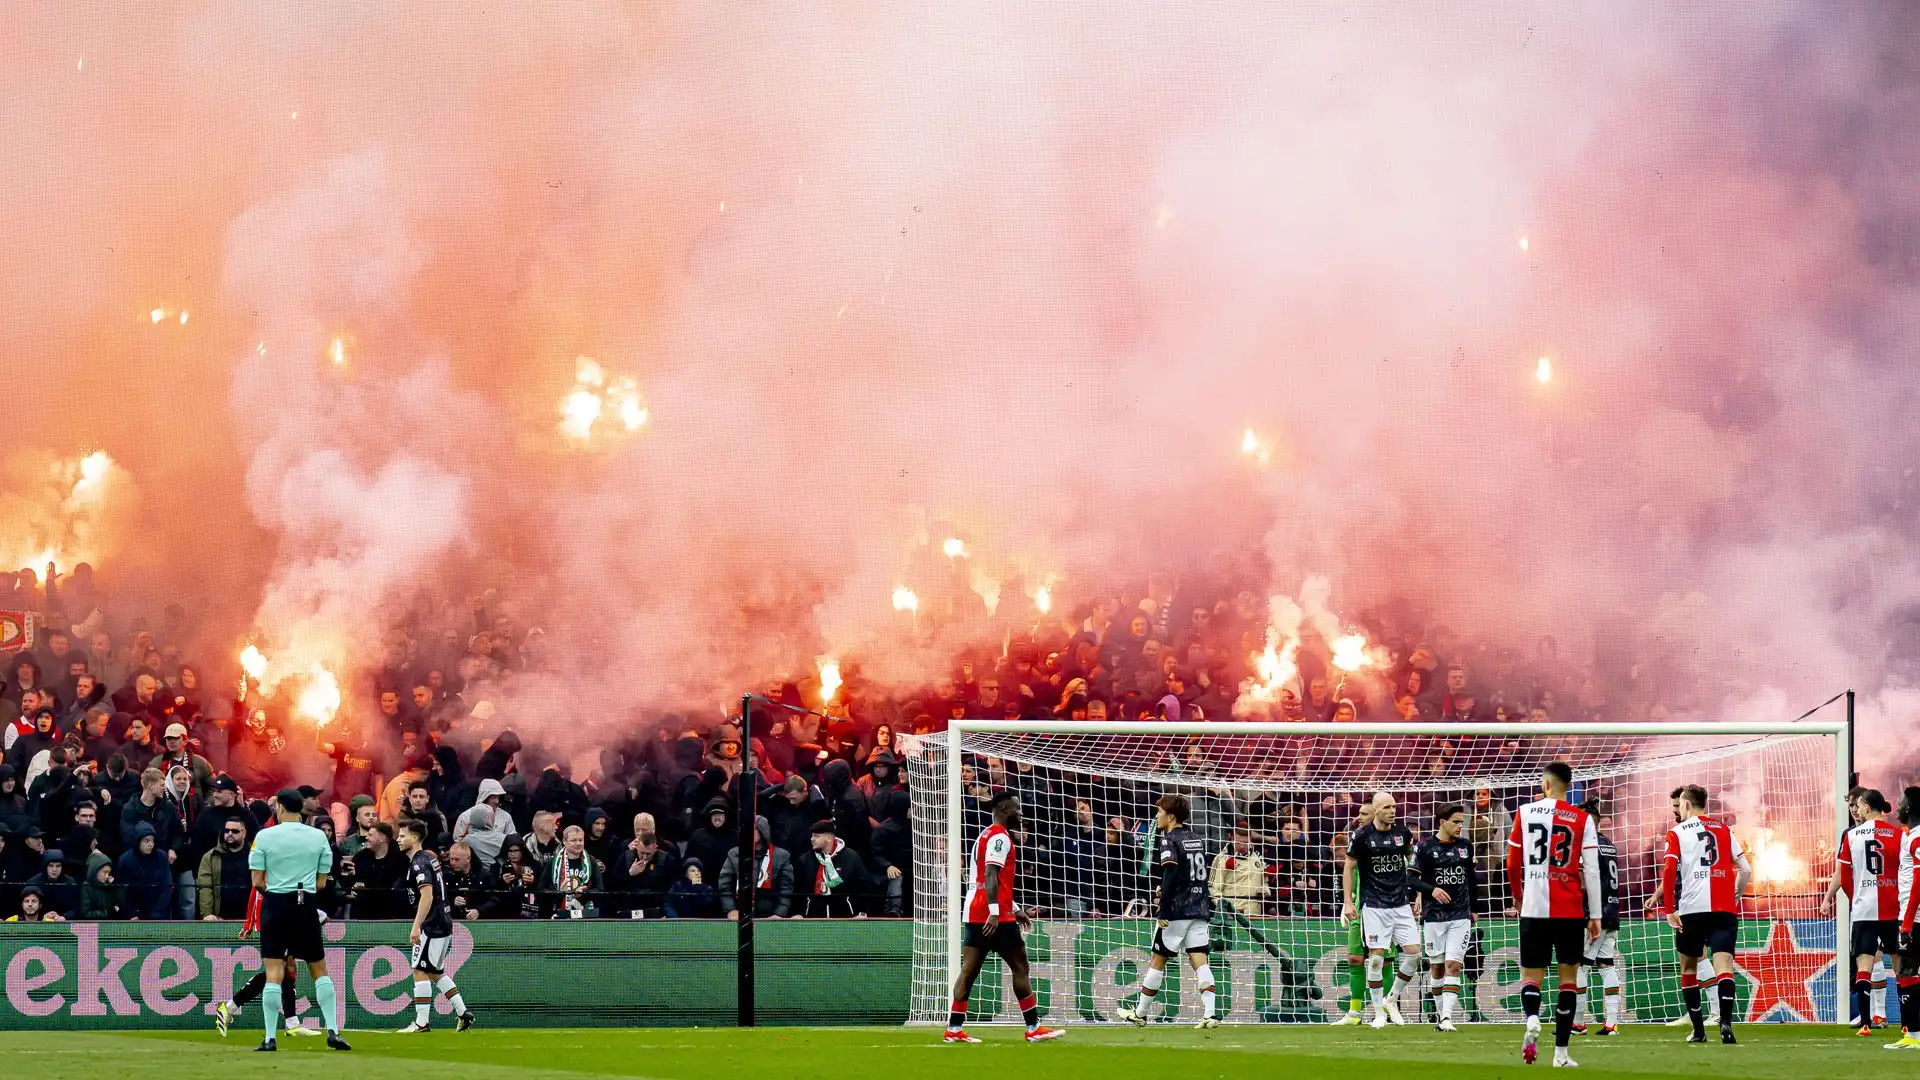 Il Feyenoord era favorito anche perché giocava in casa